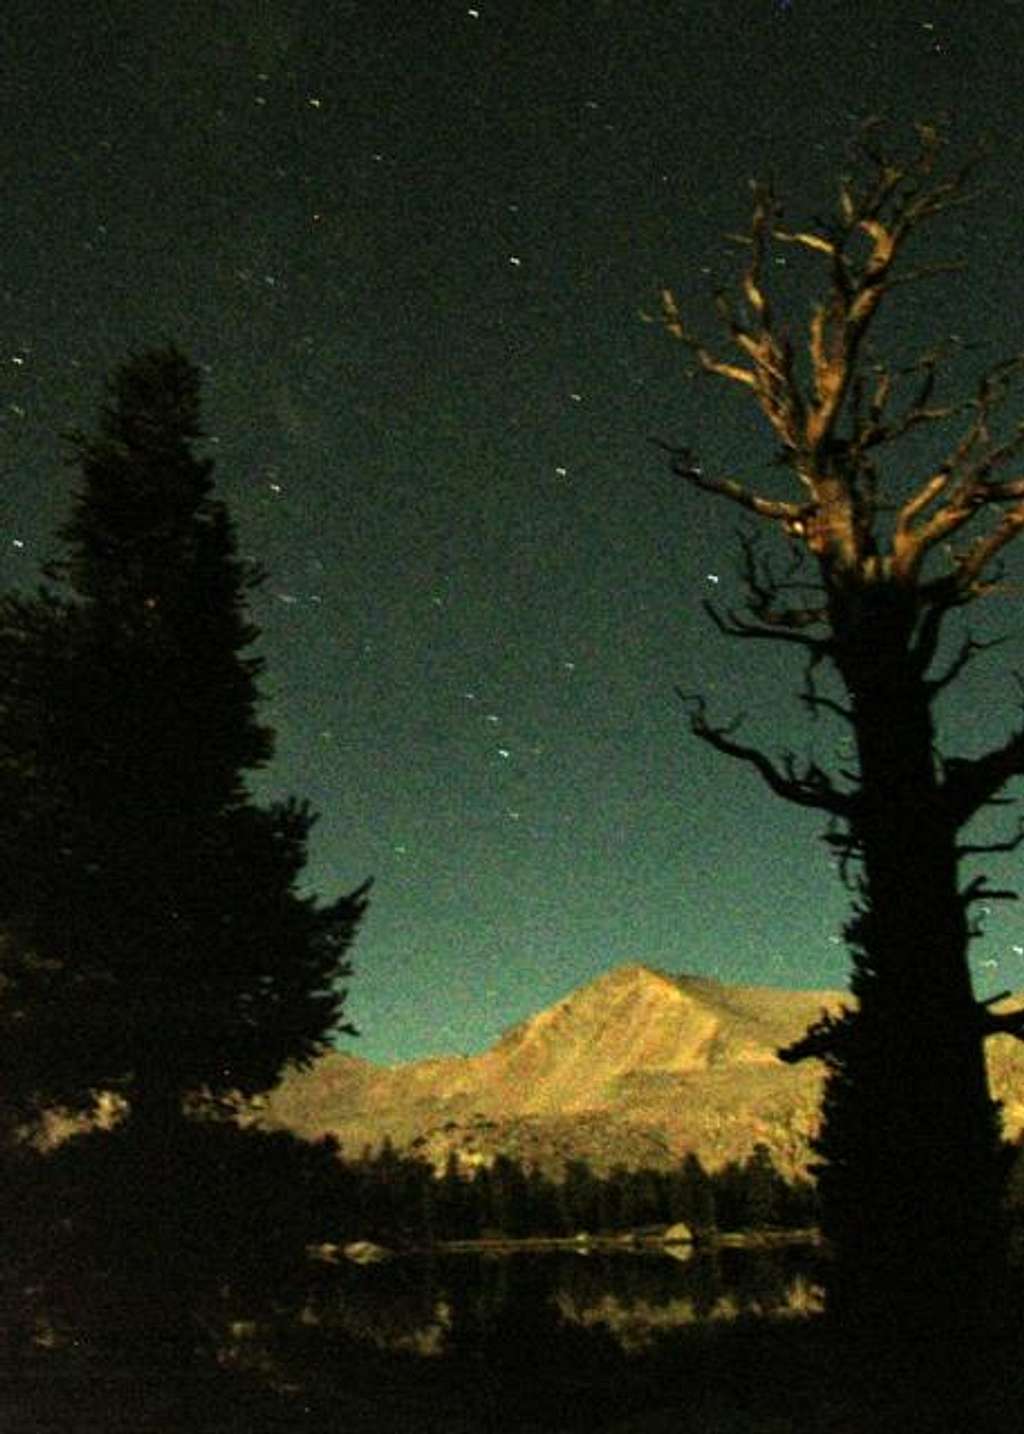 Cirque Peak, moonlit tree, stars